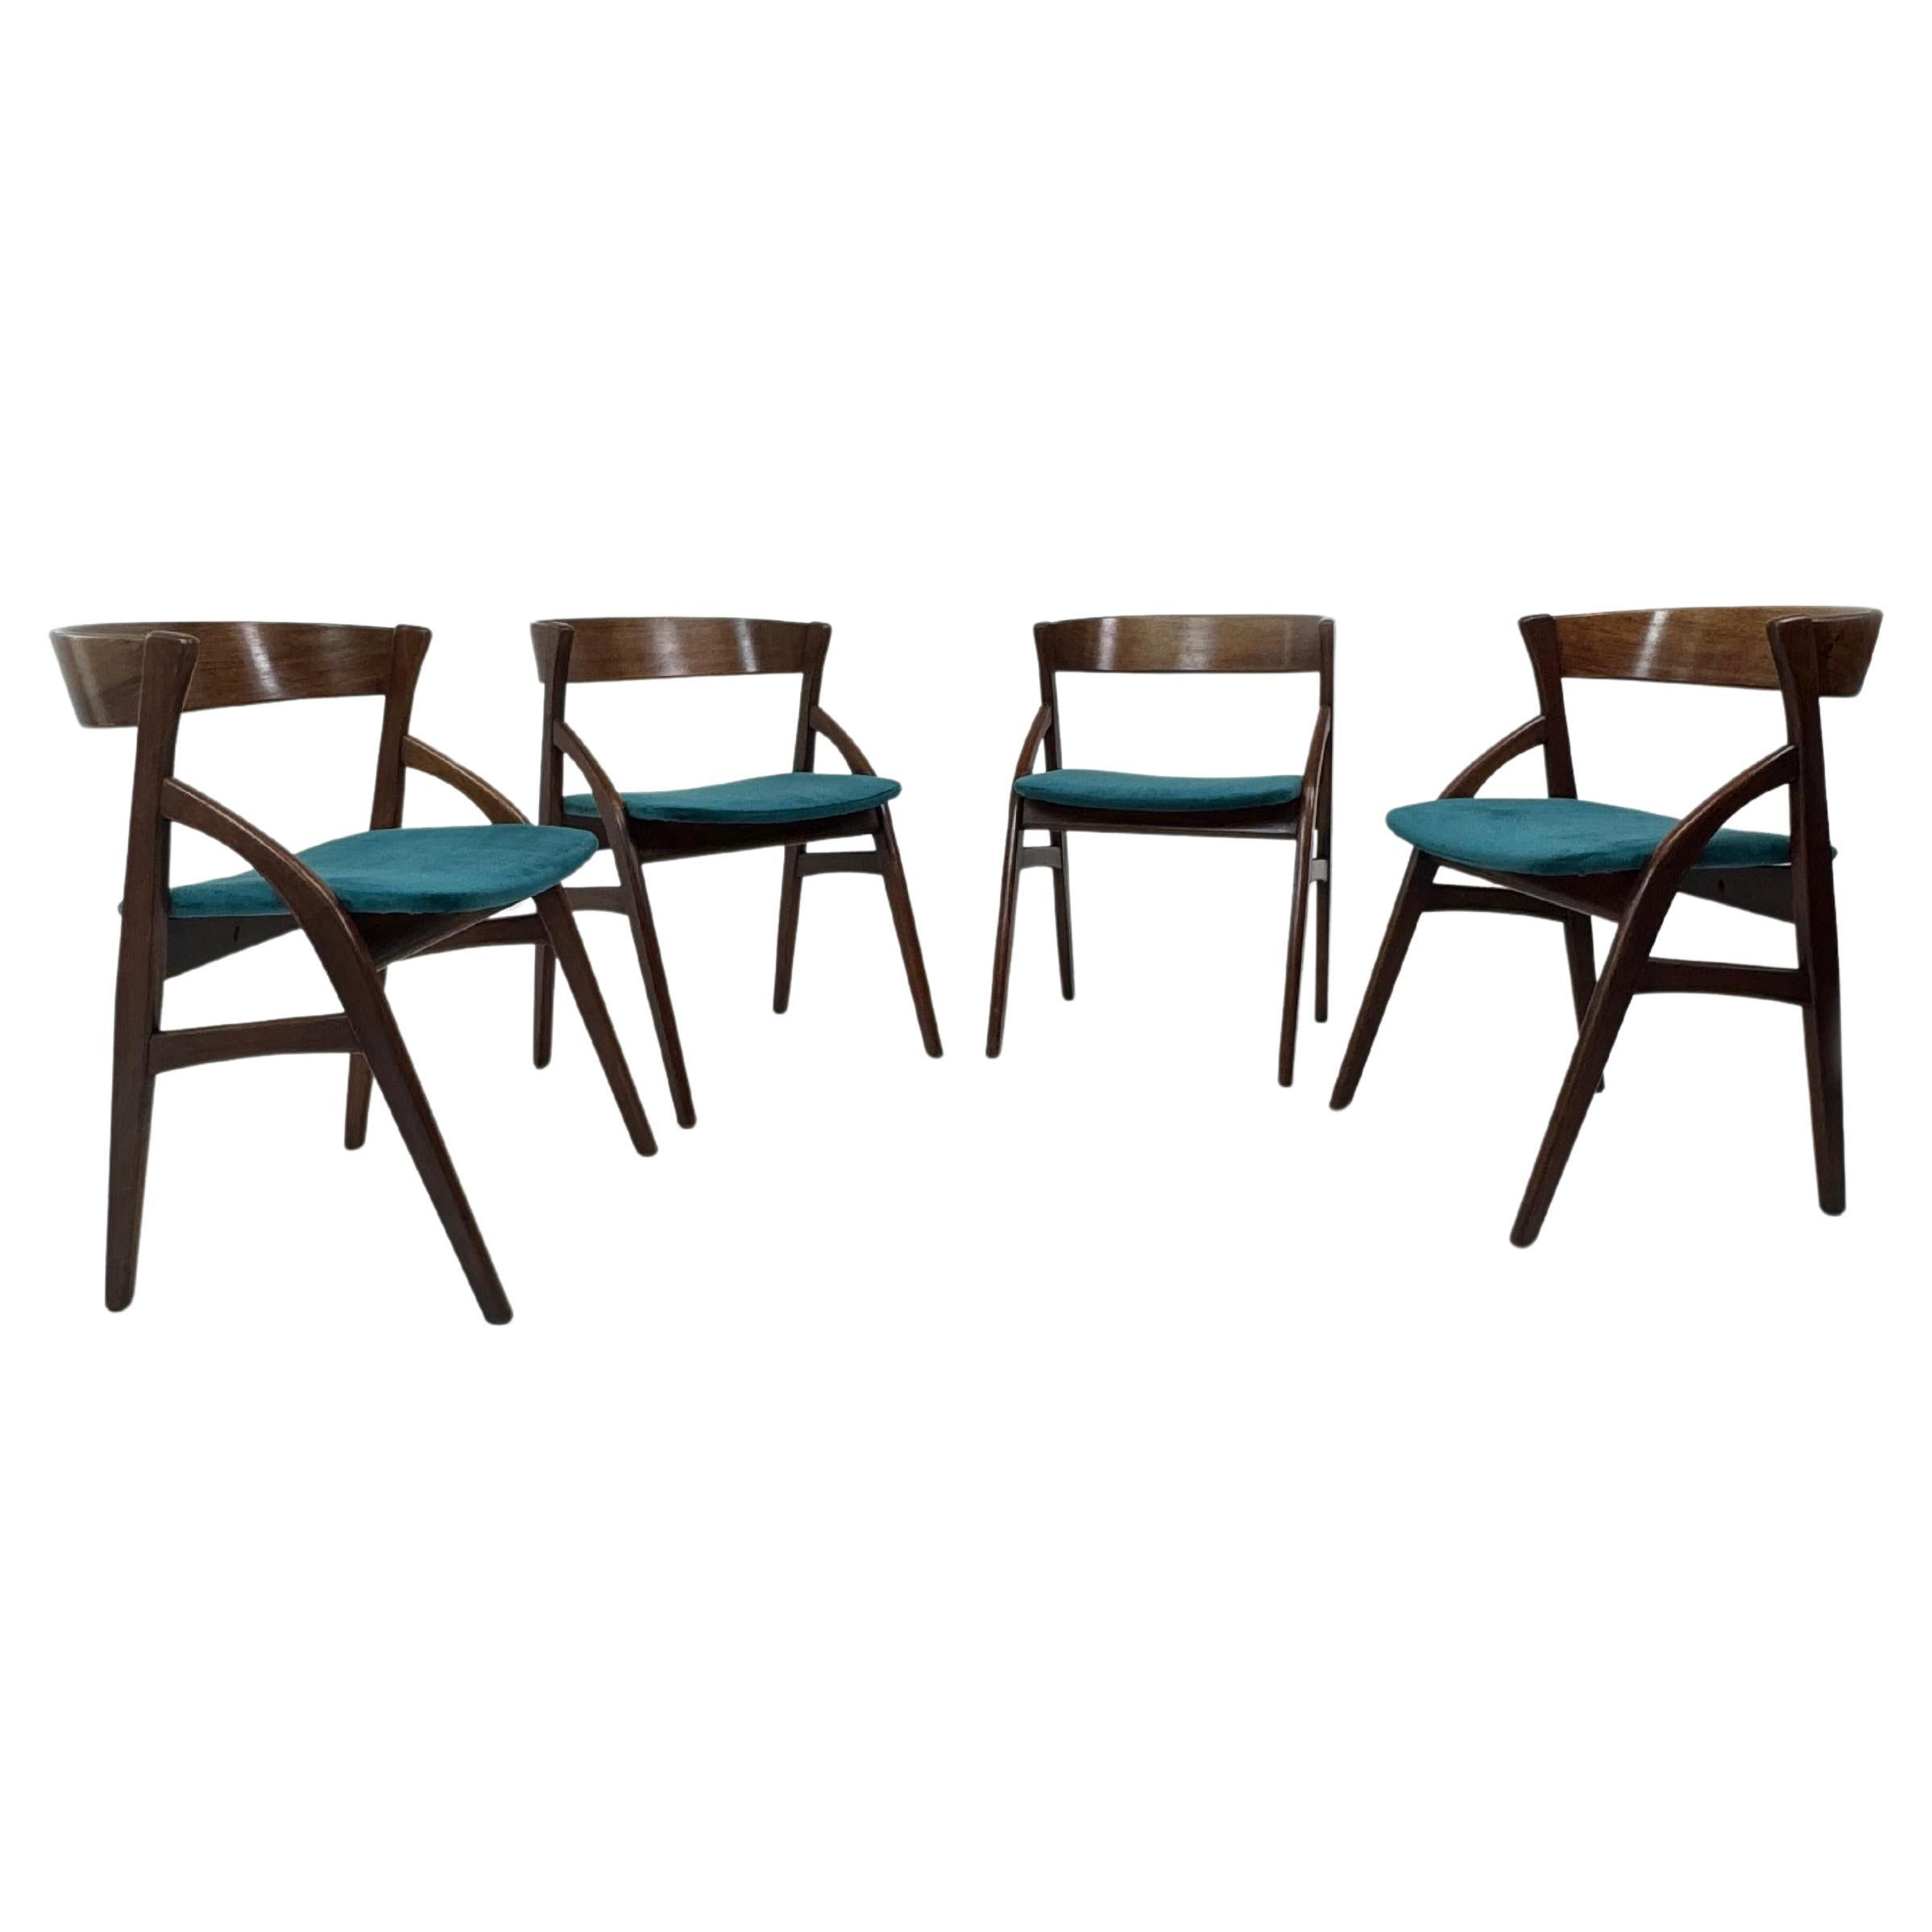 Set of 4 Teak & Velvet Dining Chairs, by Dyrlund Model 141, Denmark 1960's